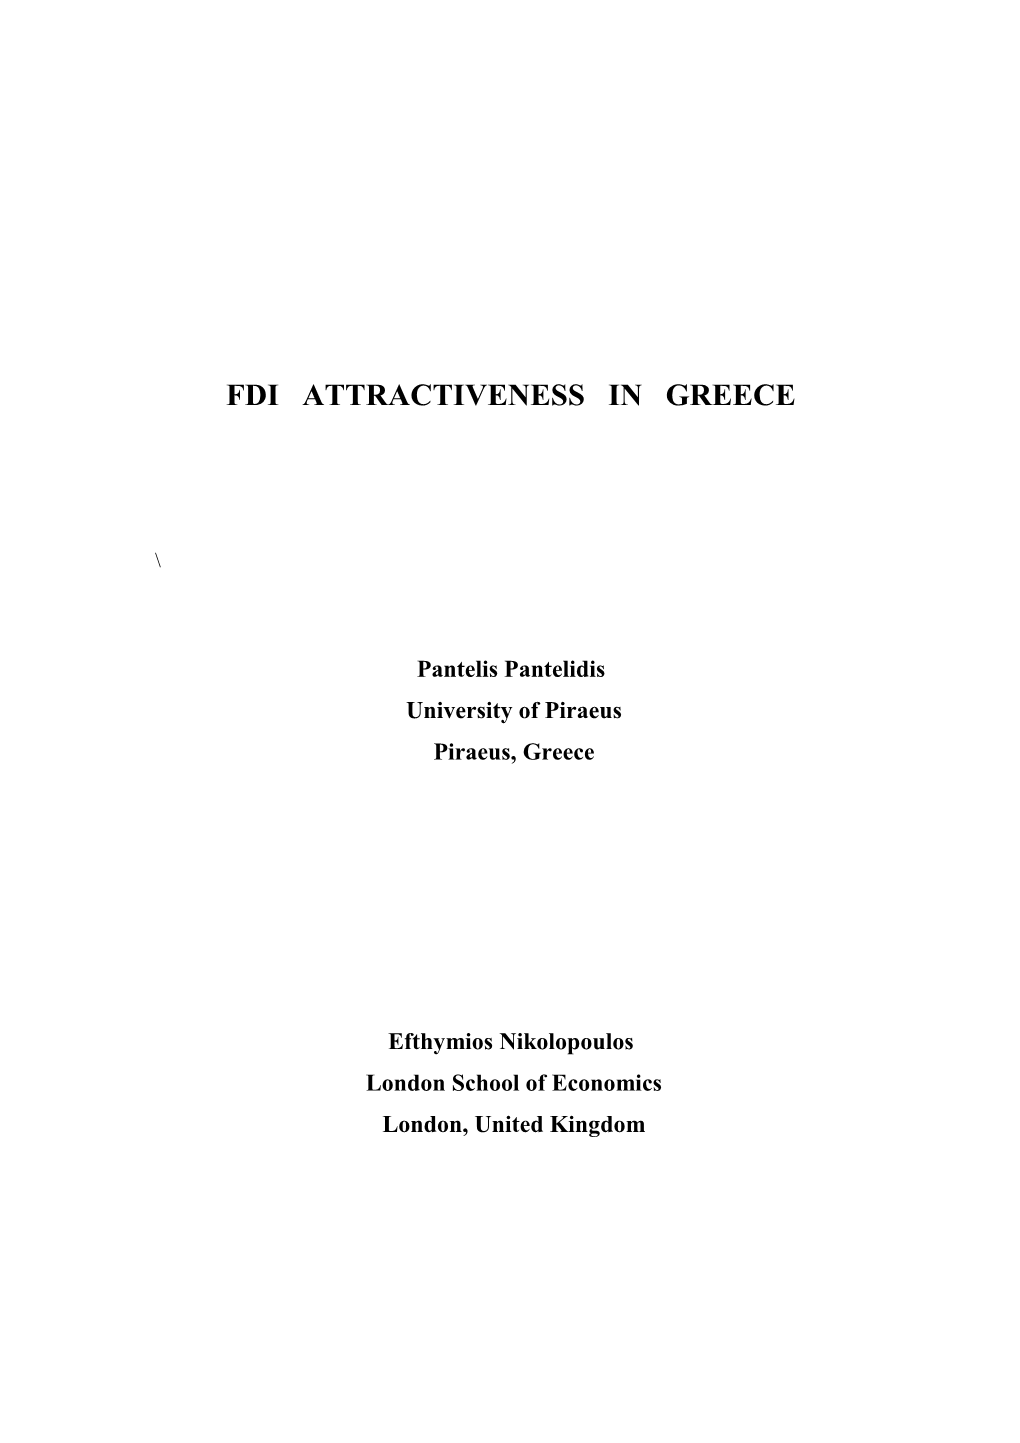 Fdi Attractiveness in Greece